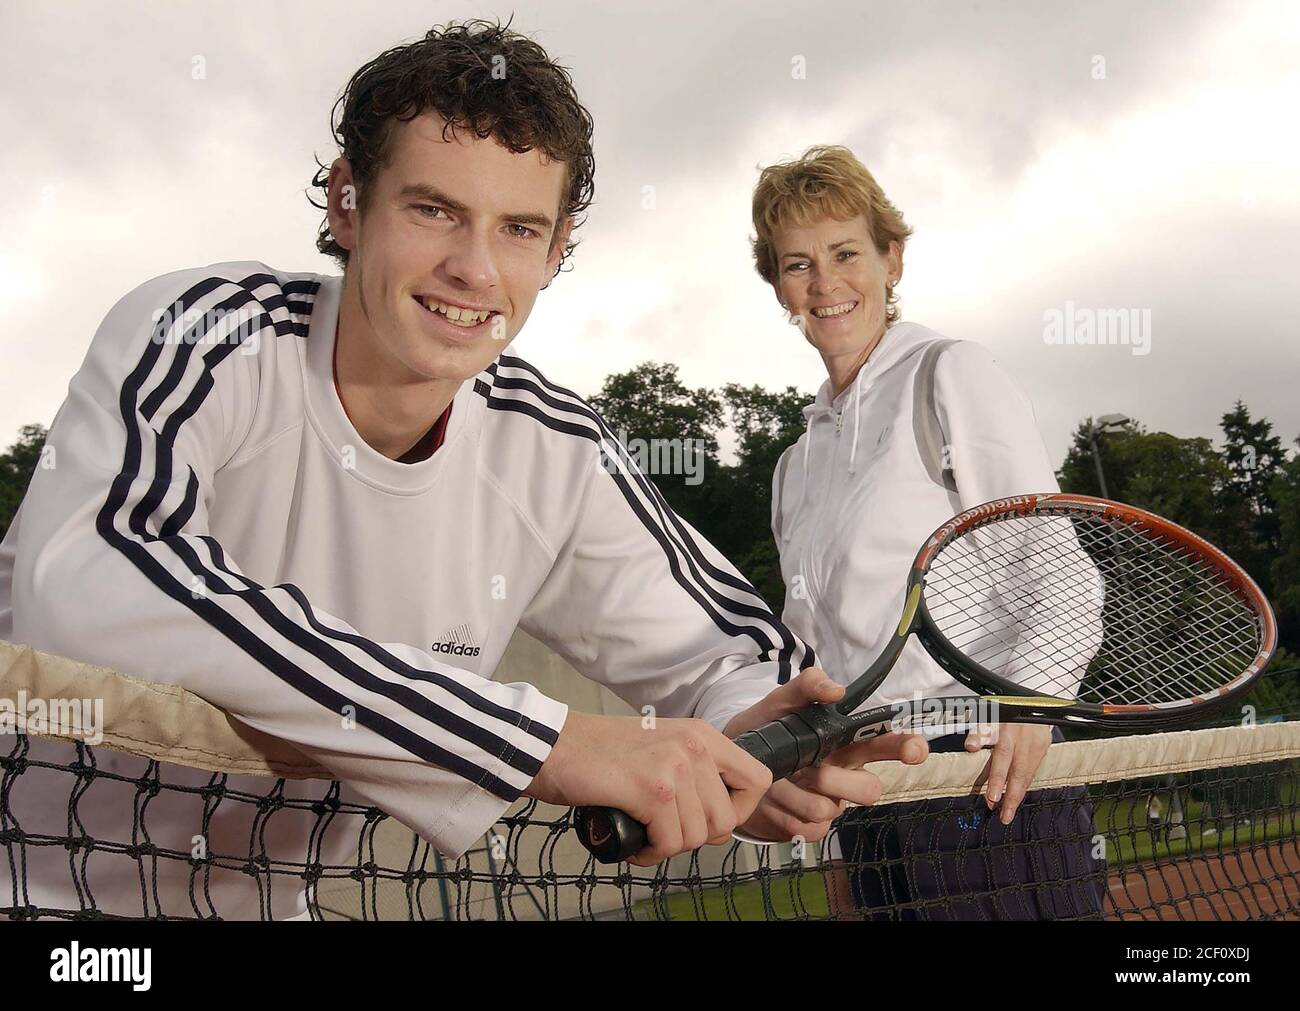 Uno de los mejores jugadores de tenis del mundo en sólo 16, Andy Murray nació el 15 de mayo de 1987 visto aquí con mamá Judy pics tomado en 2004 por Alan Peebles Foto de stock